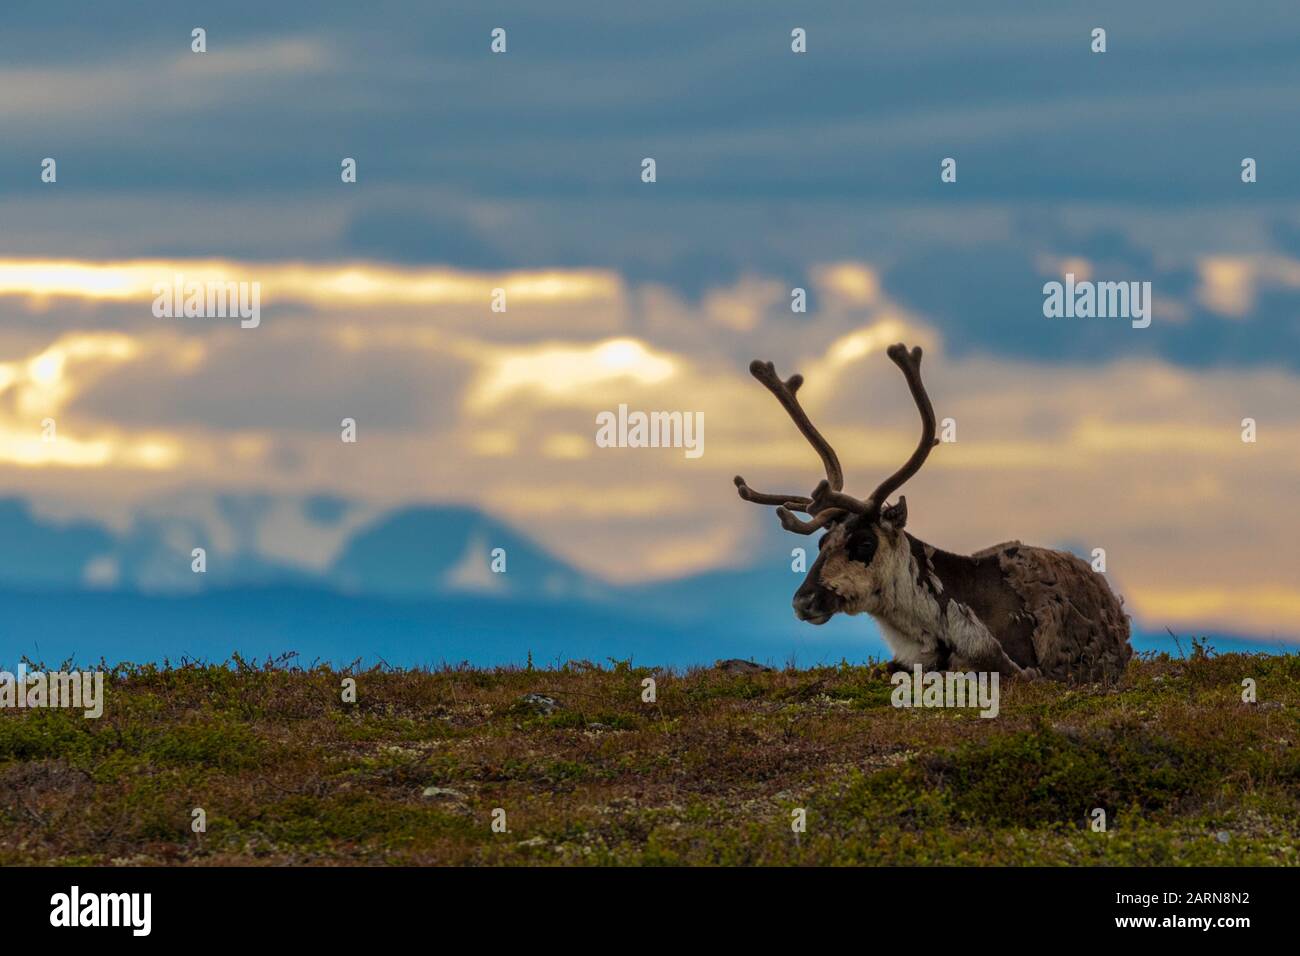 Rentier, Rangifer tarandus, unten liegend, bei Sonnenuntergang, der Himmel ist sehr bunt, auf dem Berg Dundret, Gällivare, Schwedisch Lappland, Schweden Stockfoto